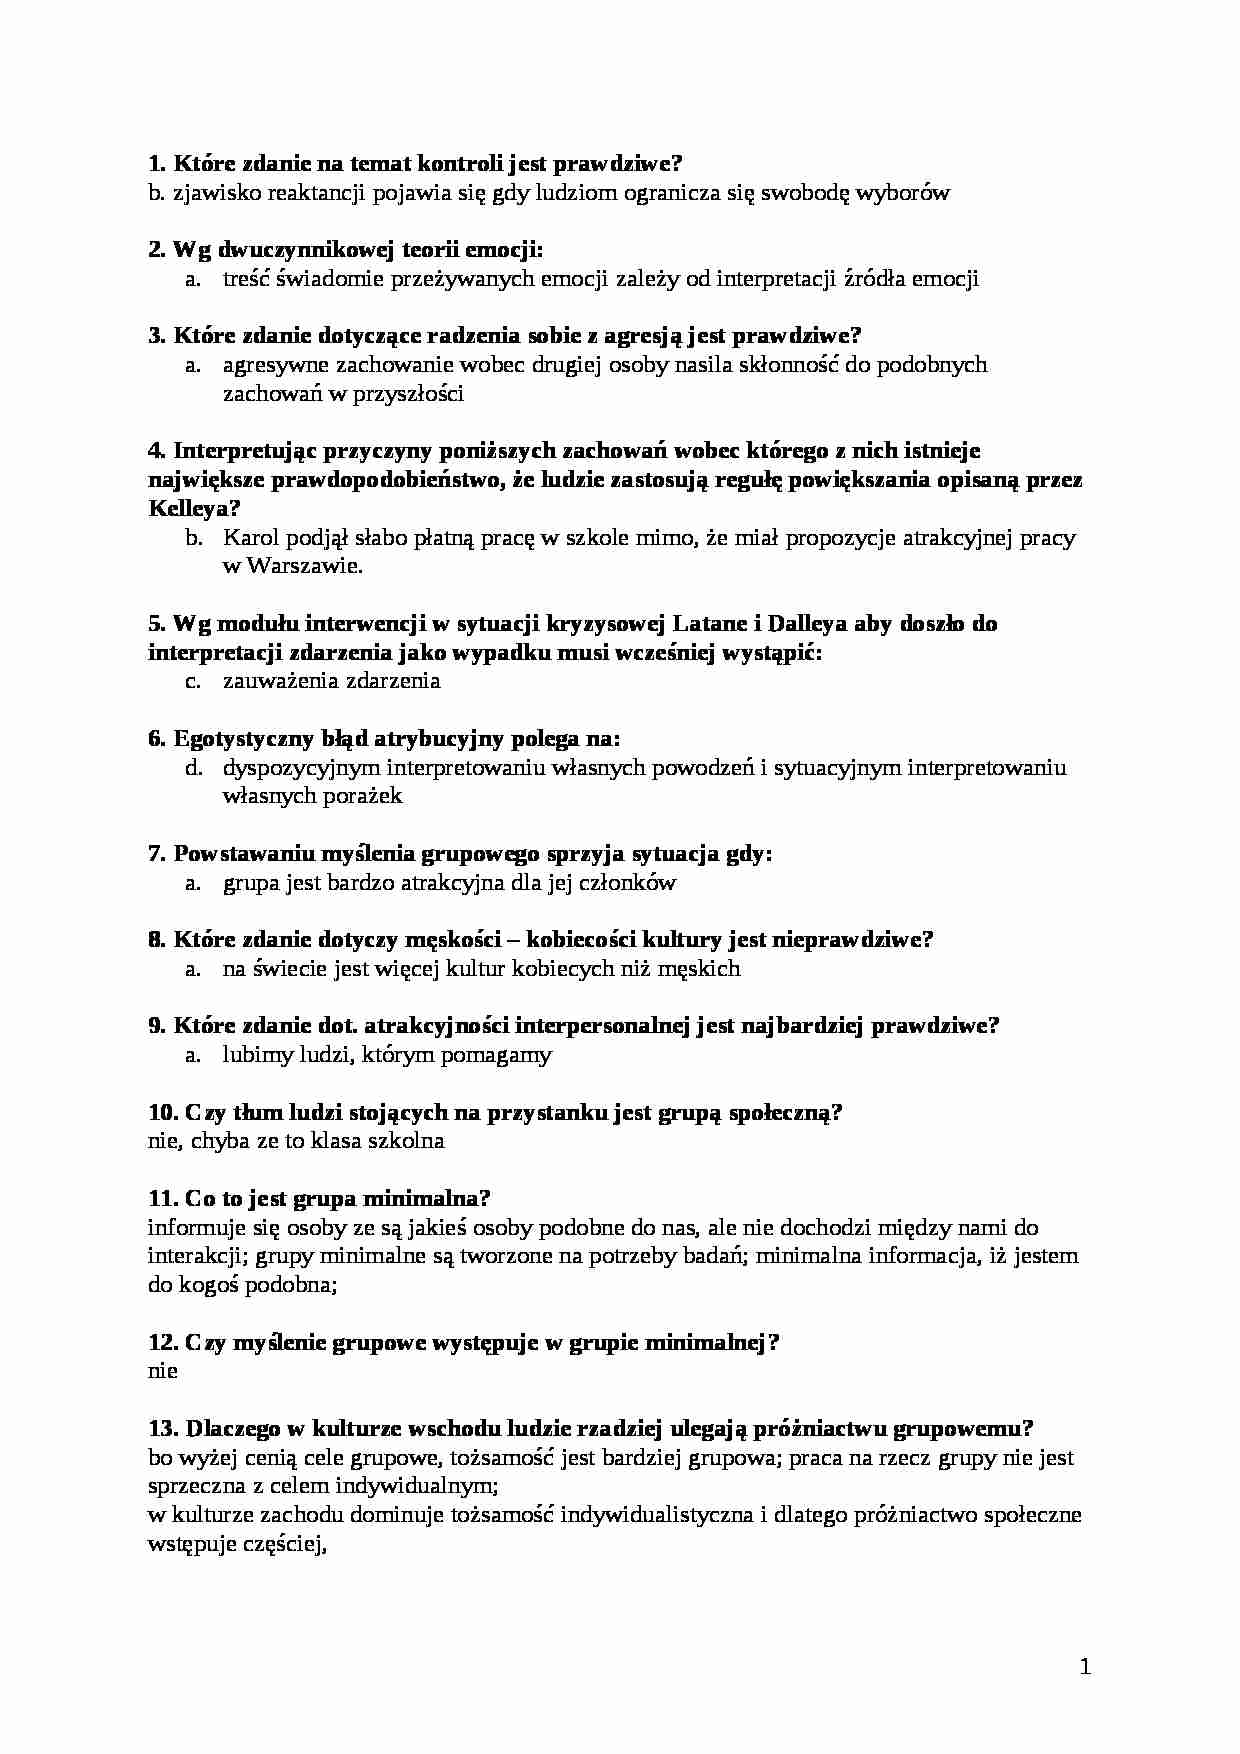 Psychologia społeczna-pytania - strona 1